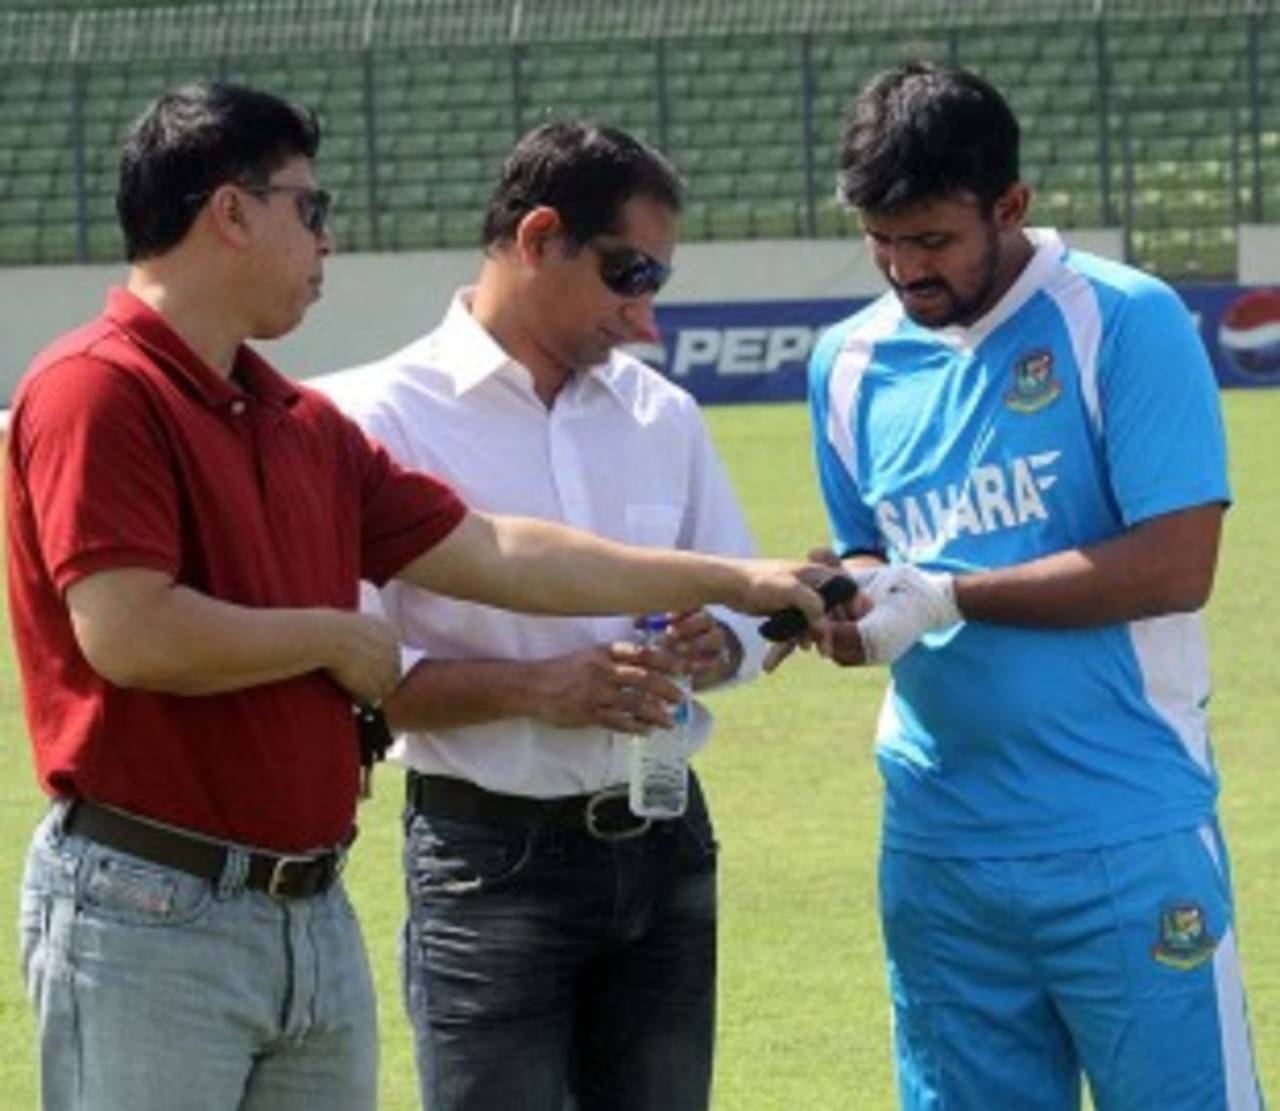 Shahriar Nafees injured his hand during training&nbsp;&nbsp;&bull;&nbsp;&nbsp;Bangladesh Cricket Board